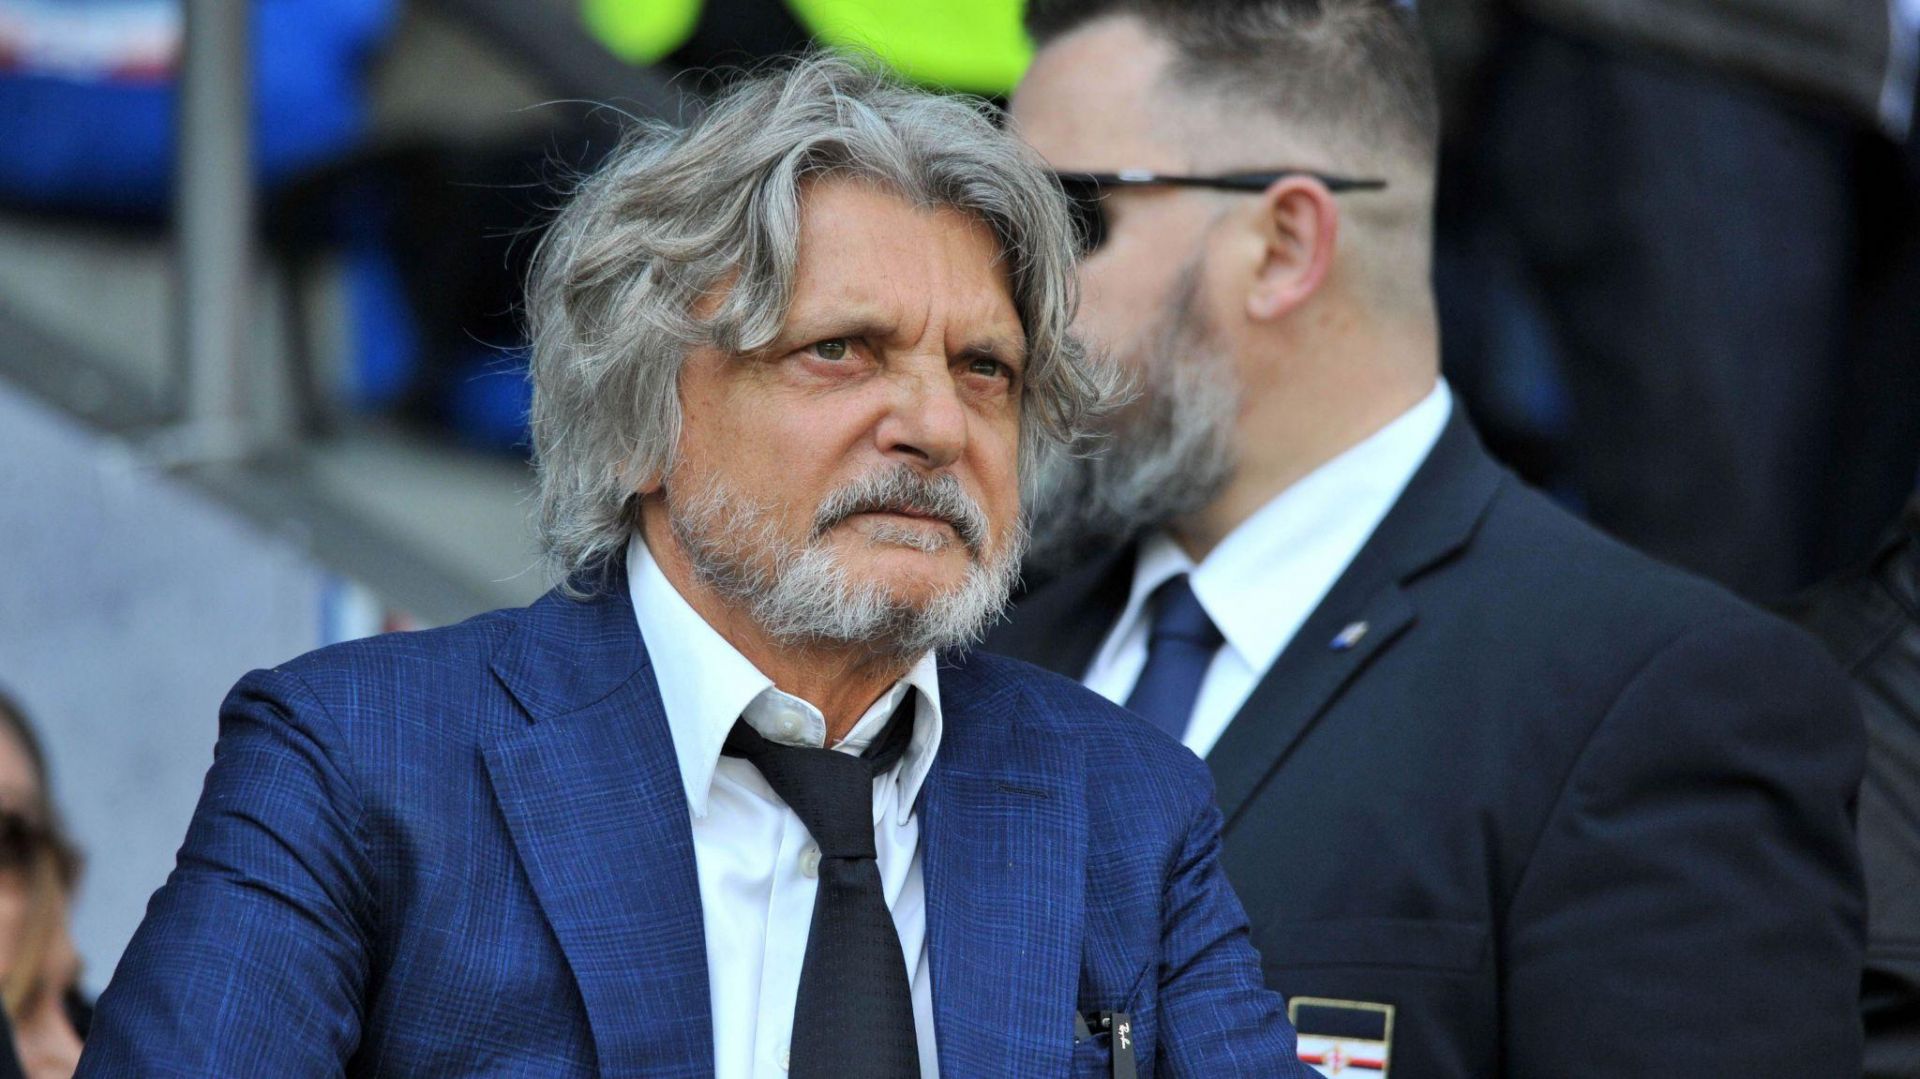 Sampdoria, l'ex presidente Ferrero rinviato a giudizio ma torna libero